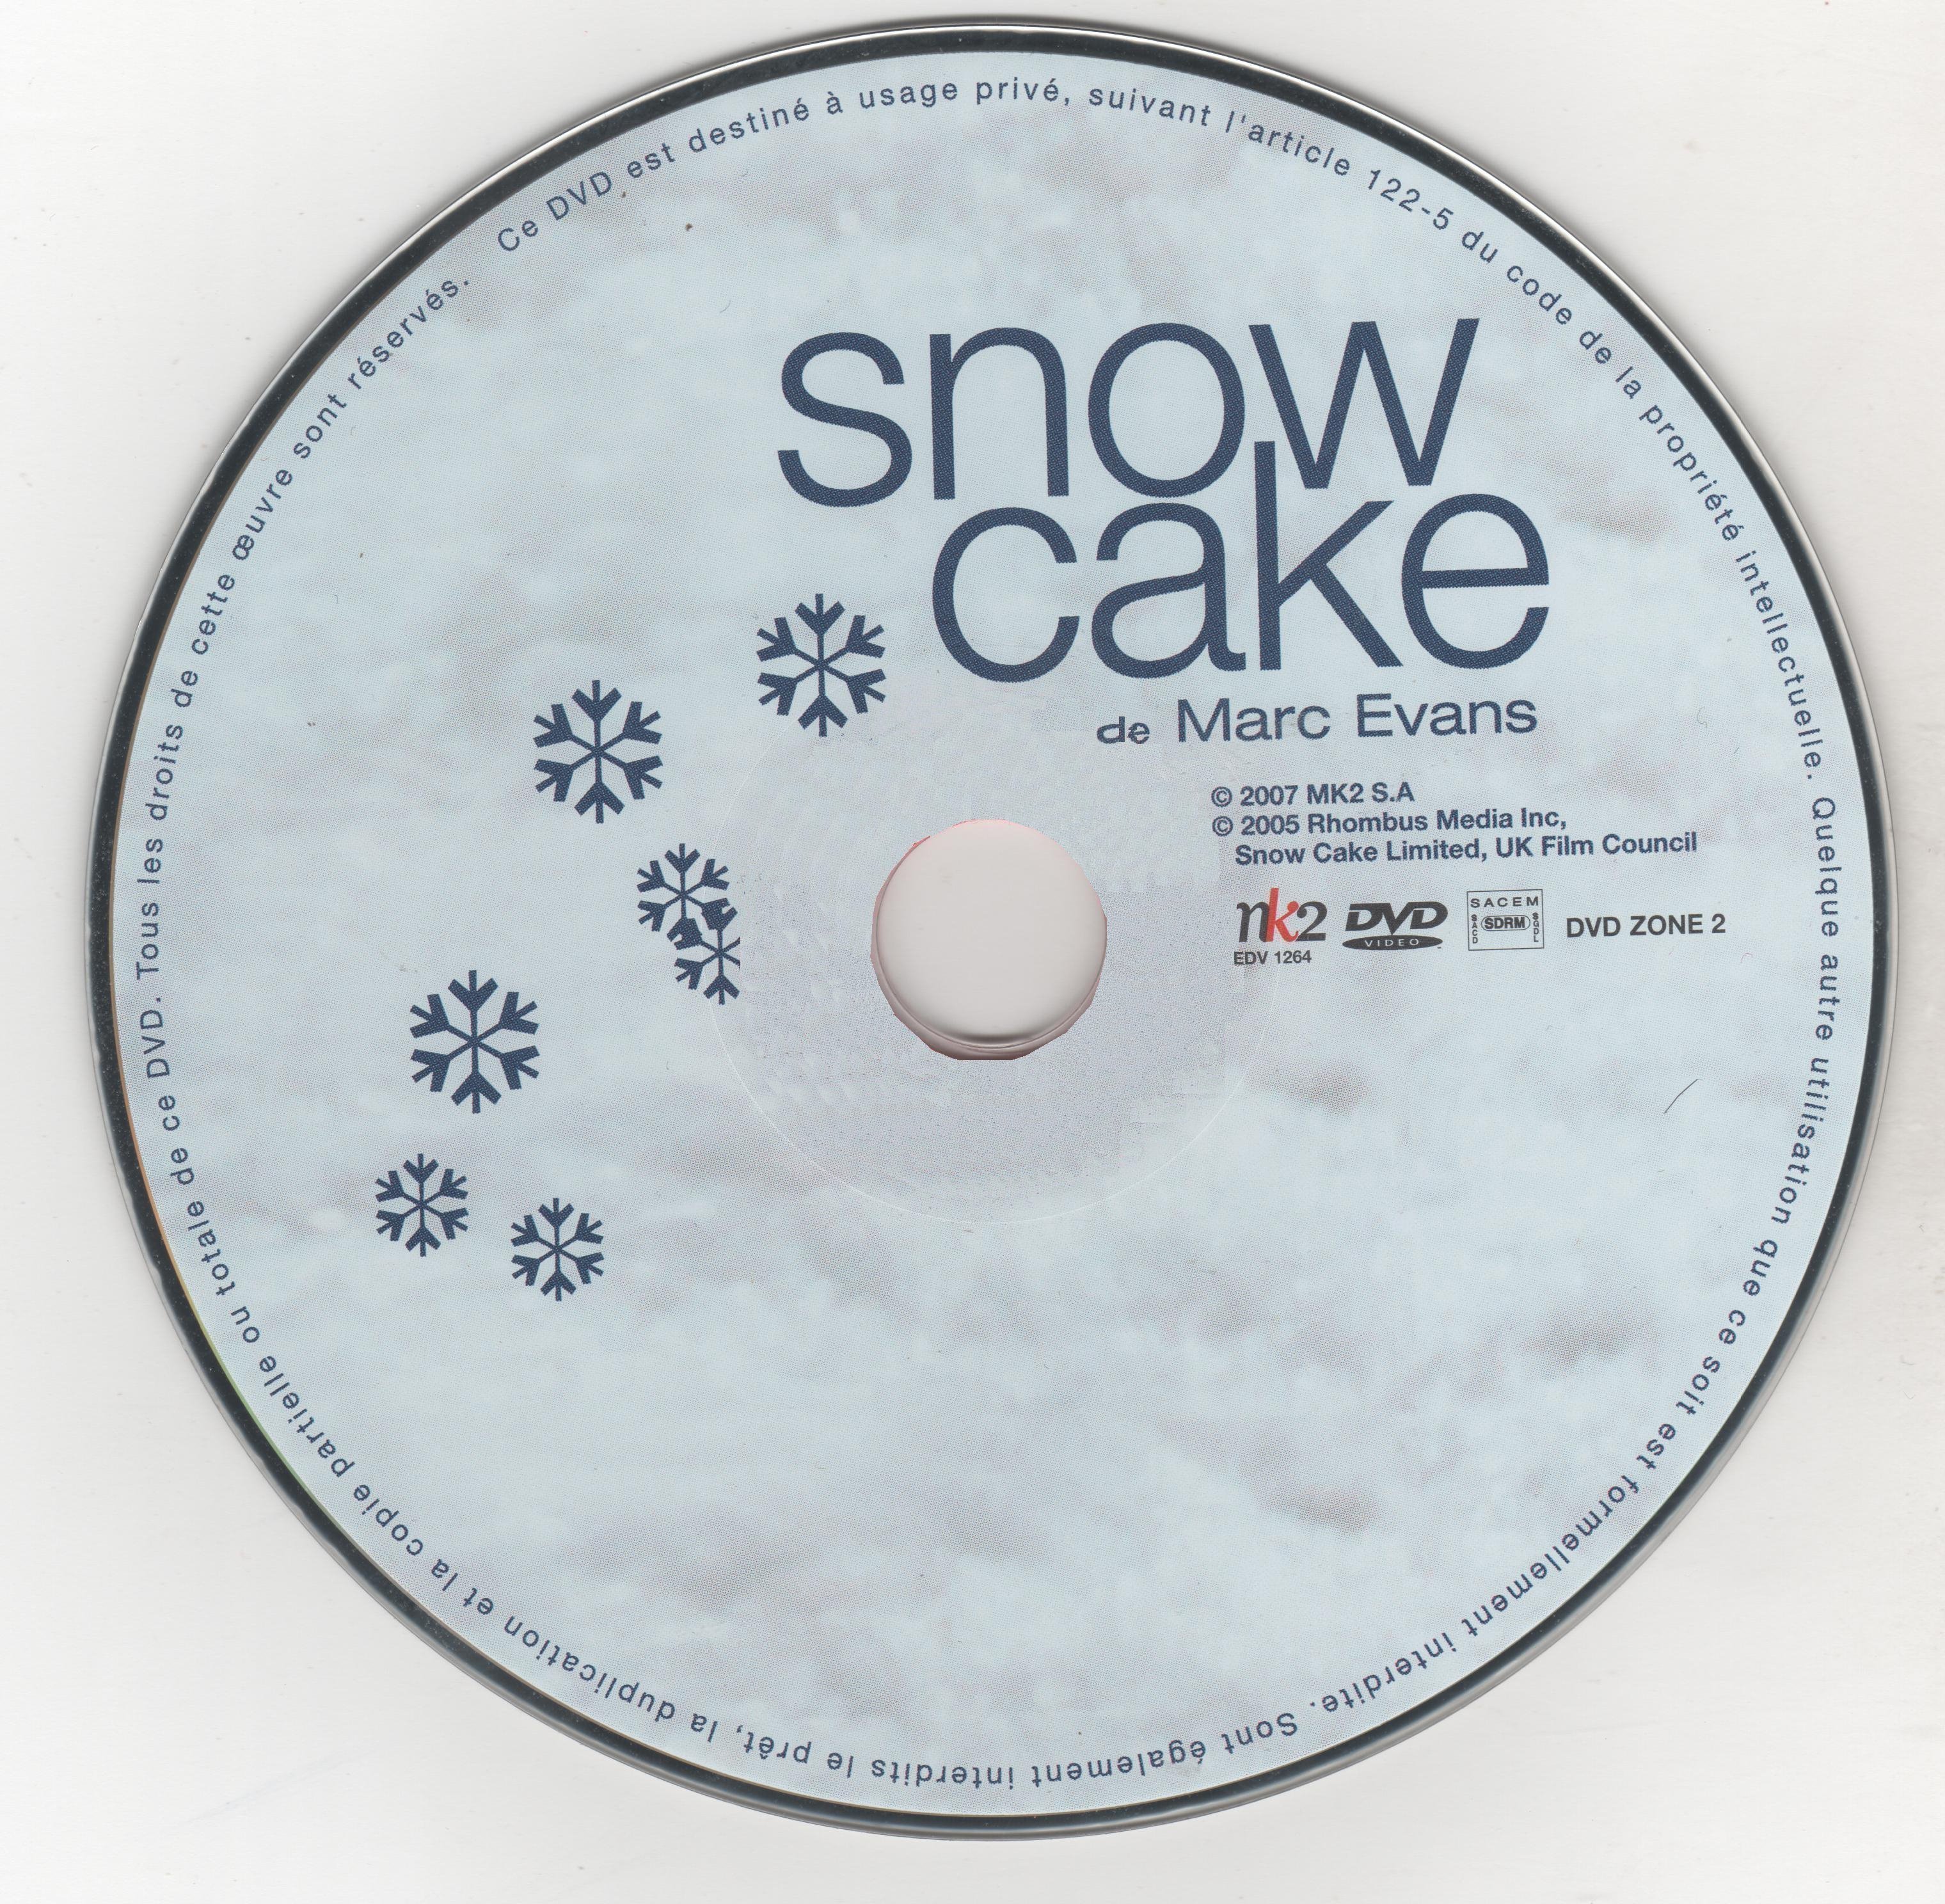 Snow cake